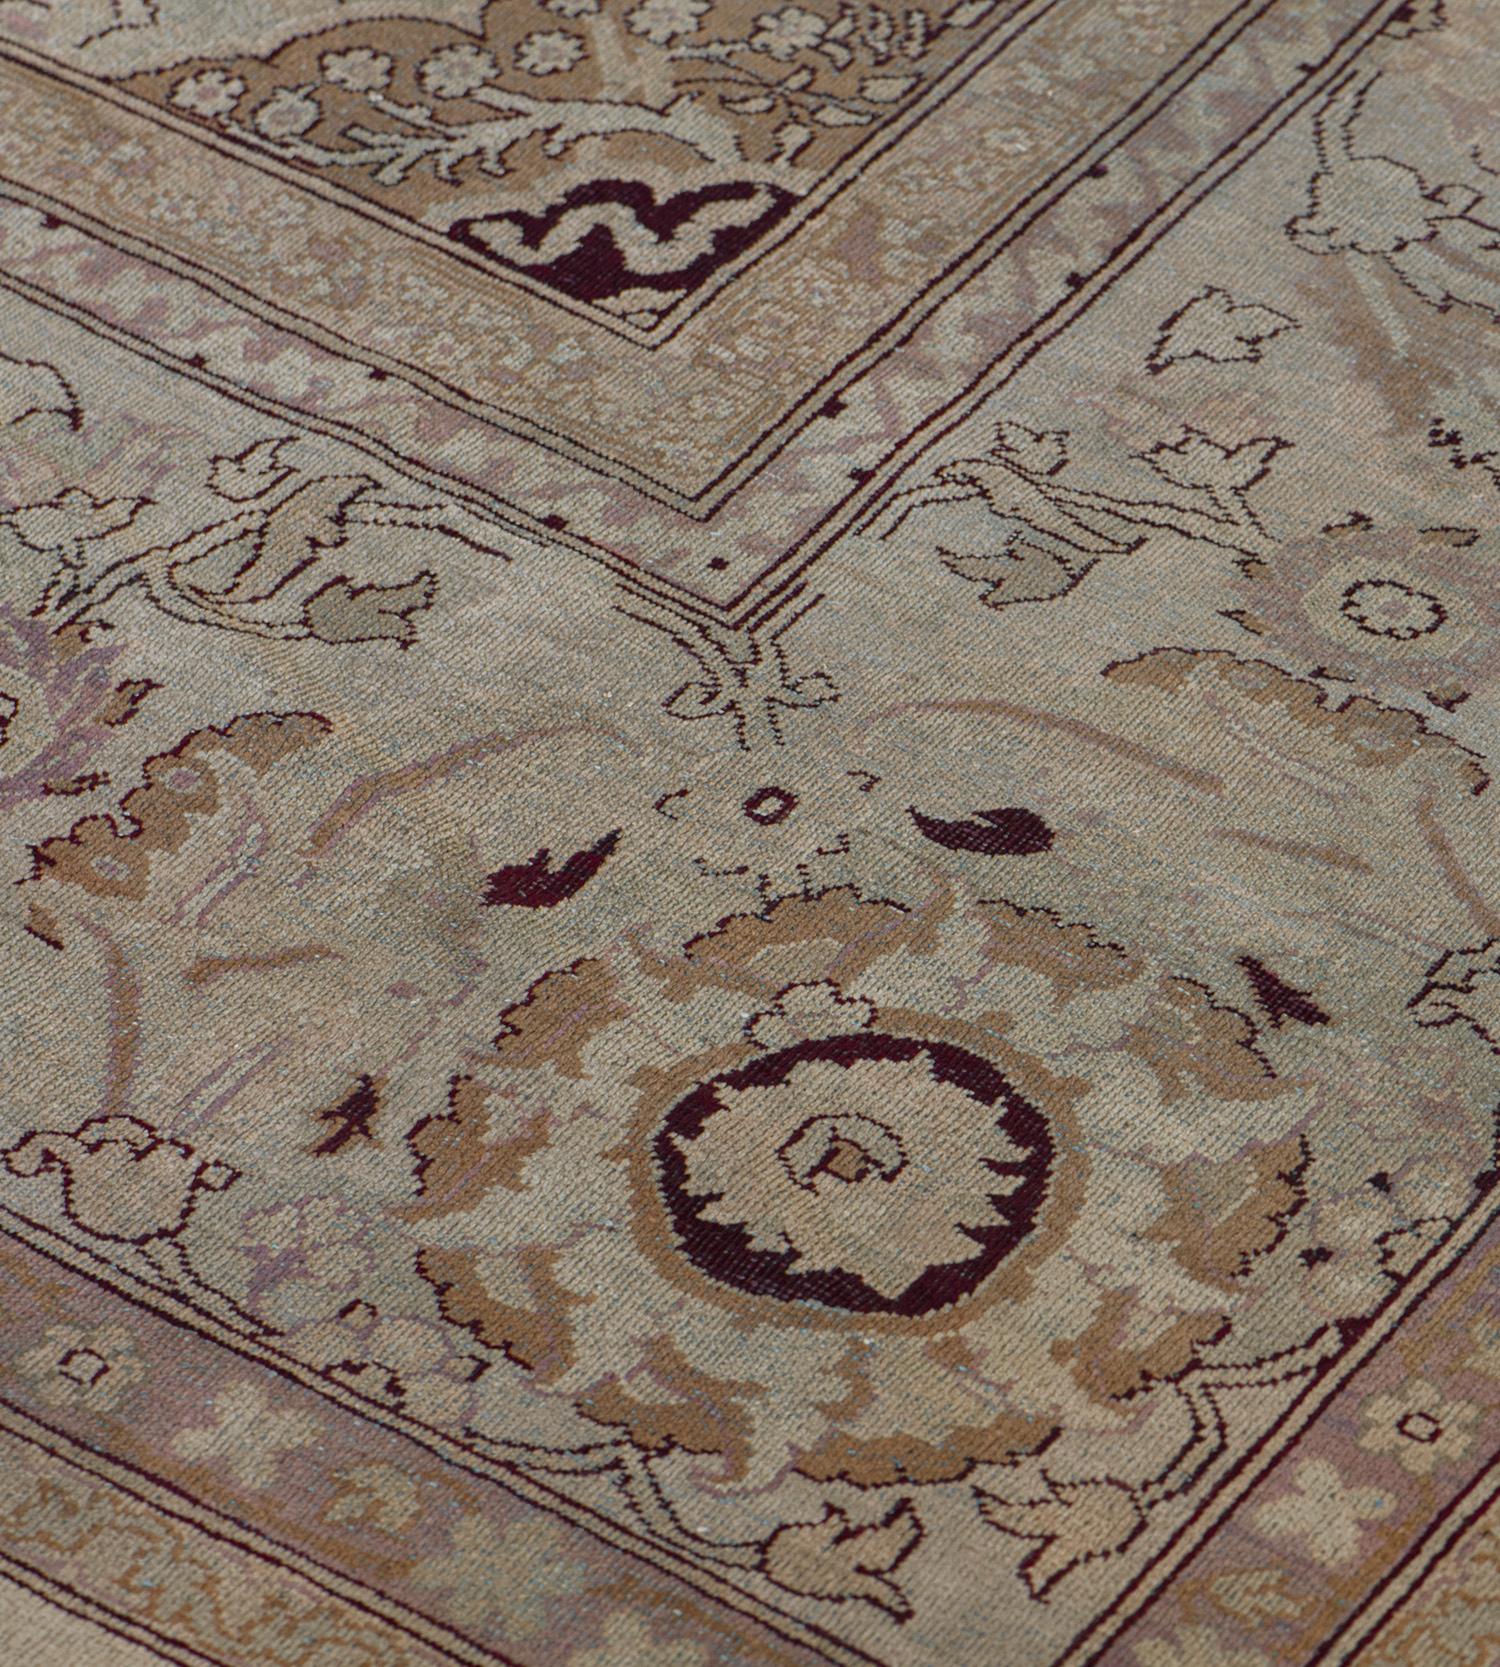 Ce tapis indien traditionnel d'Agra, tissé à la main, présente un champ crème ivoire avec des palmettes tonales formant des vignes florales sinueuses, entourant un médaillon arabesque tonique et des écoinçons similaires, dans une bordure de